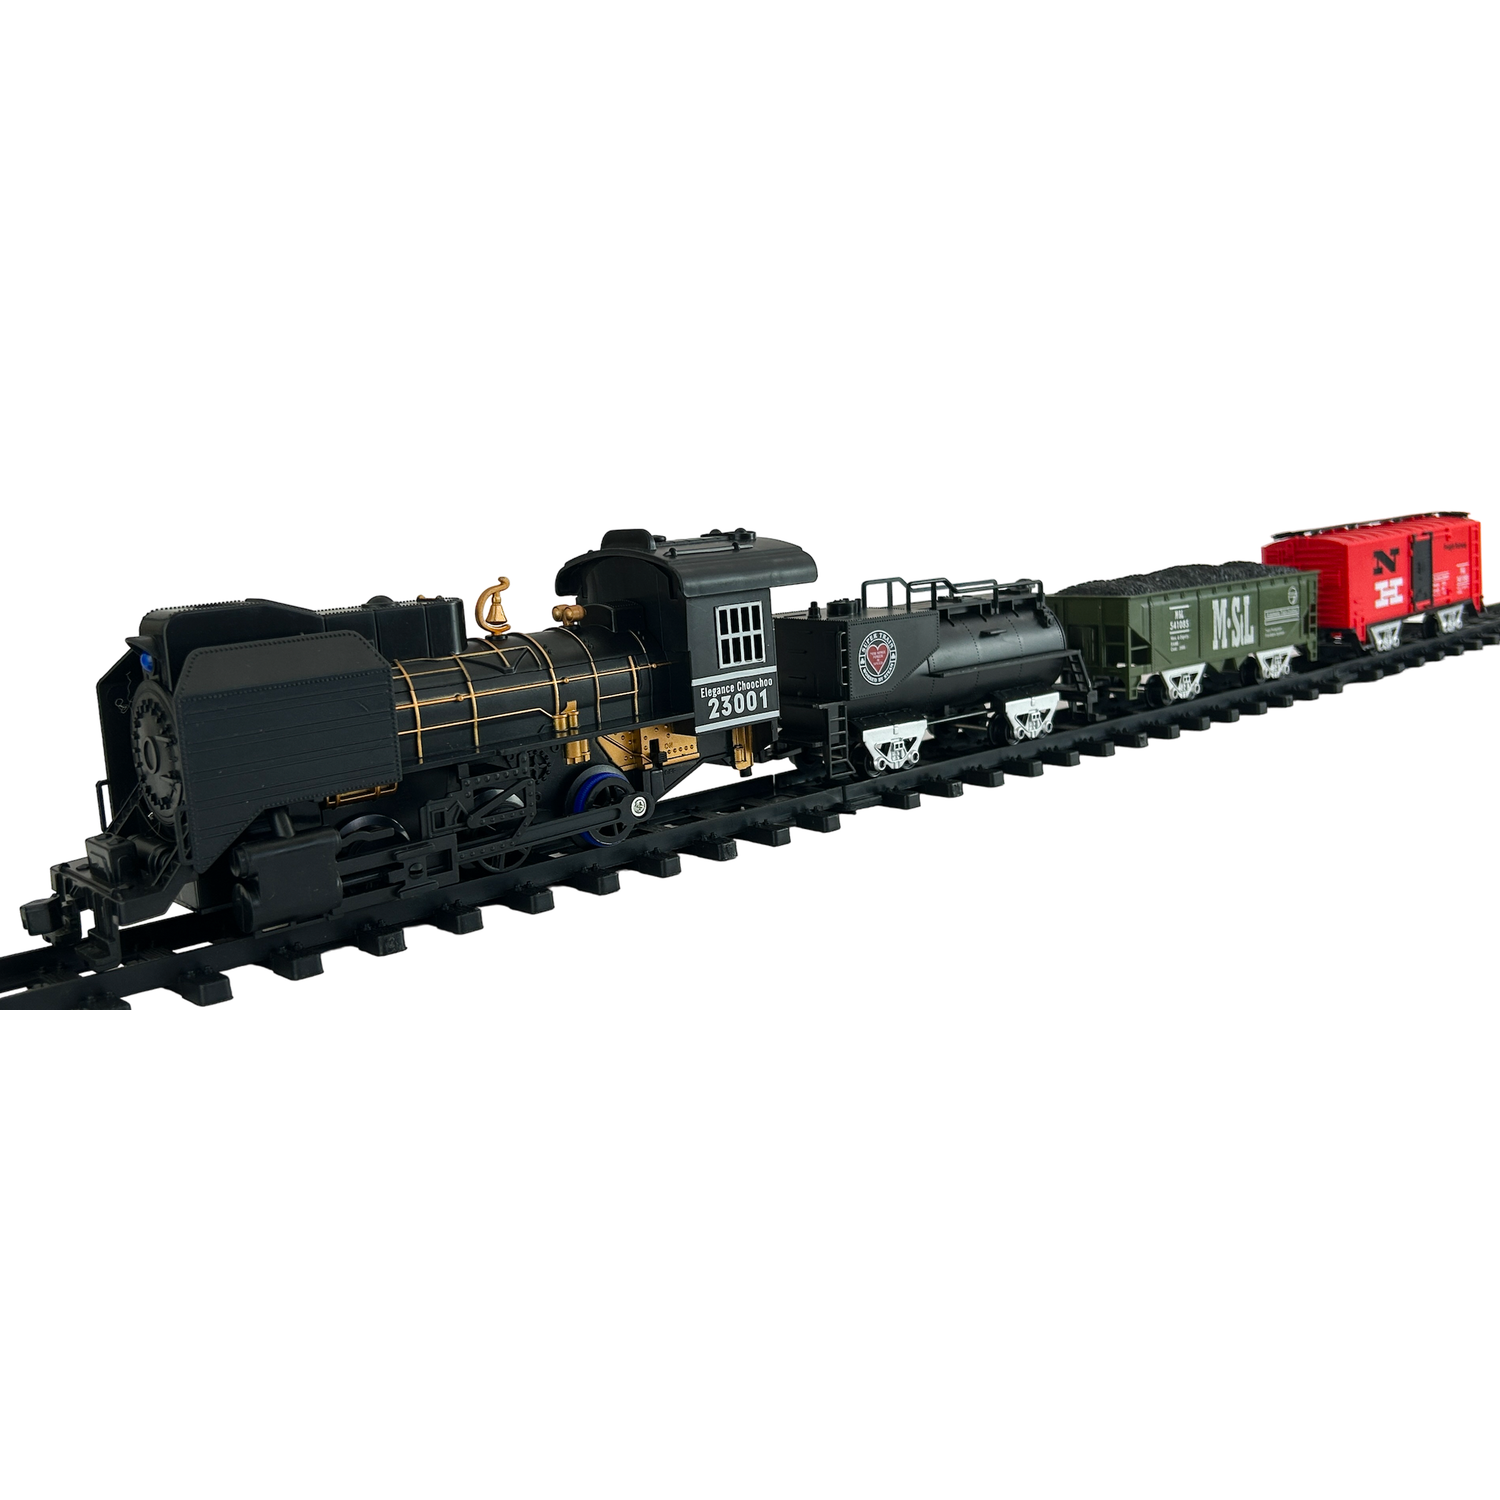 Детская железная дорога CS Toys на батарейках Classical Train 21 деталь 4 варианта сборки 3510-3A - фото 2